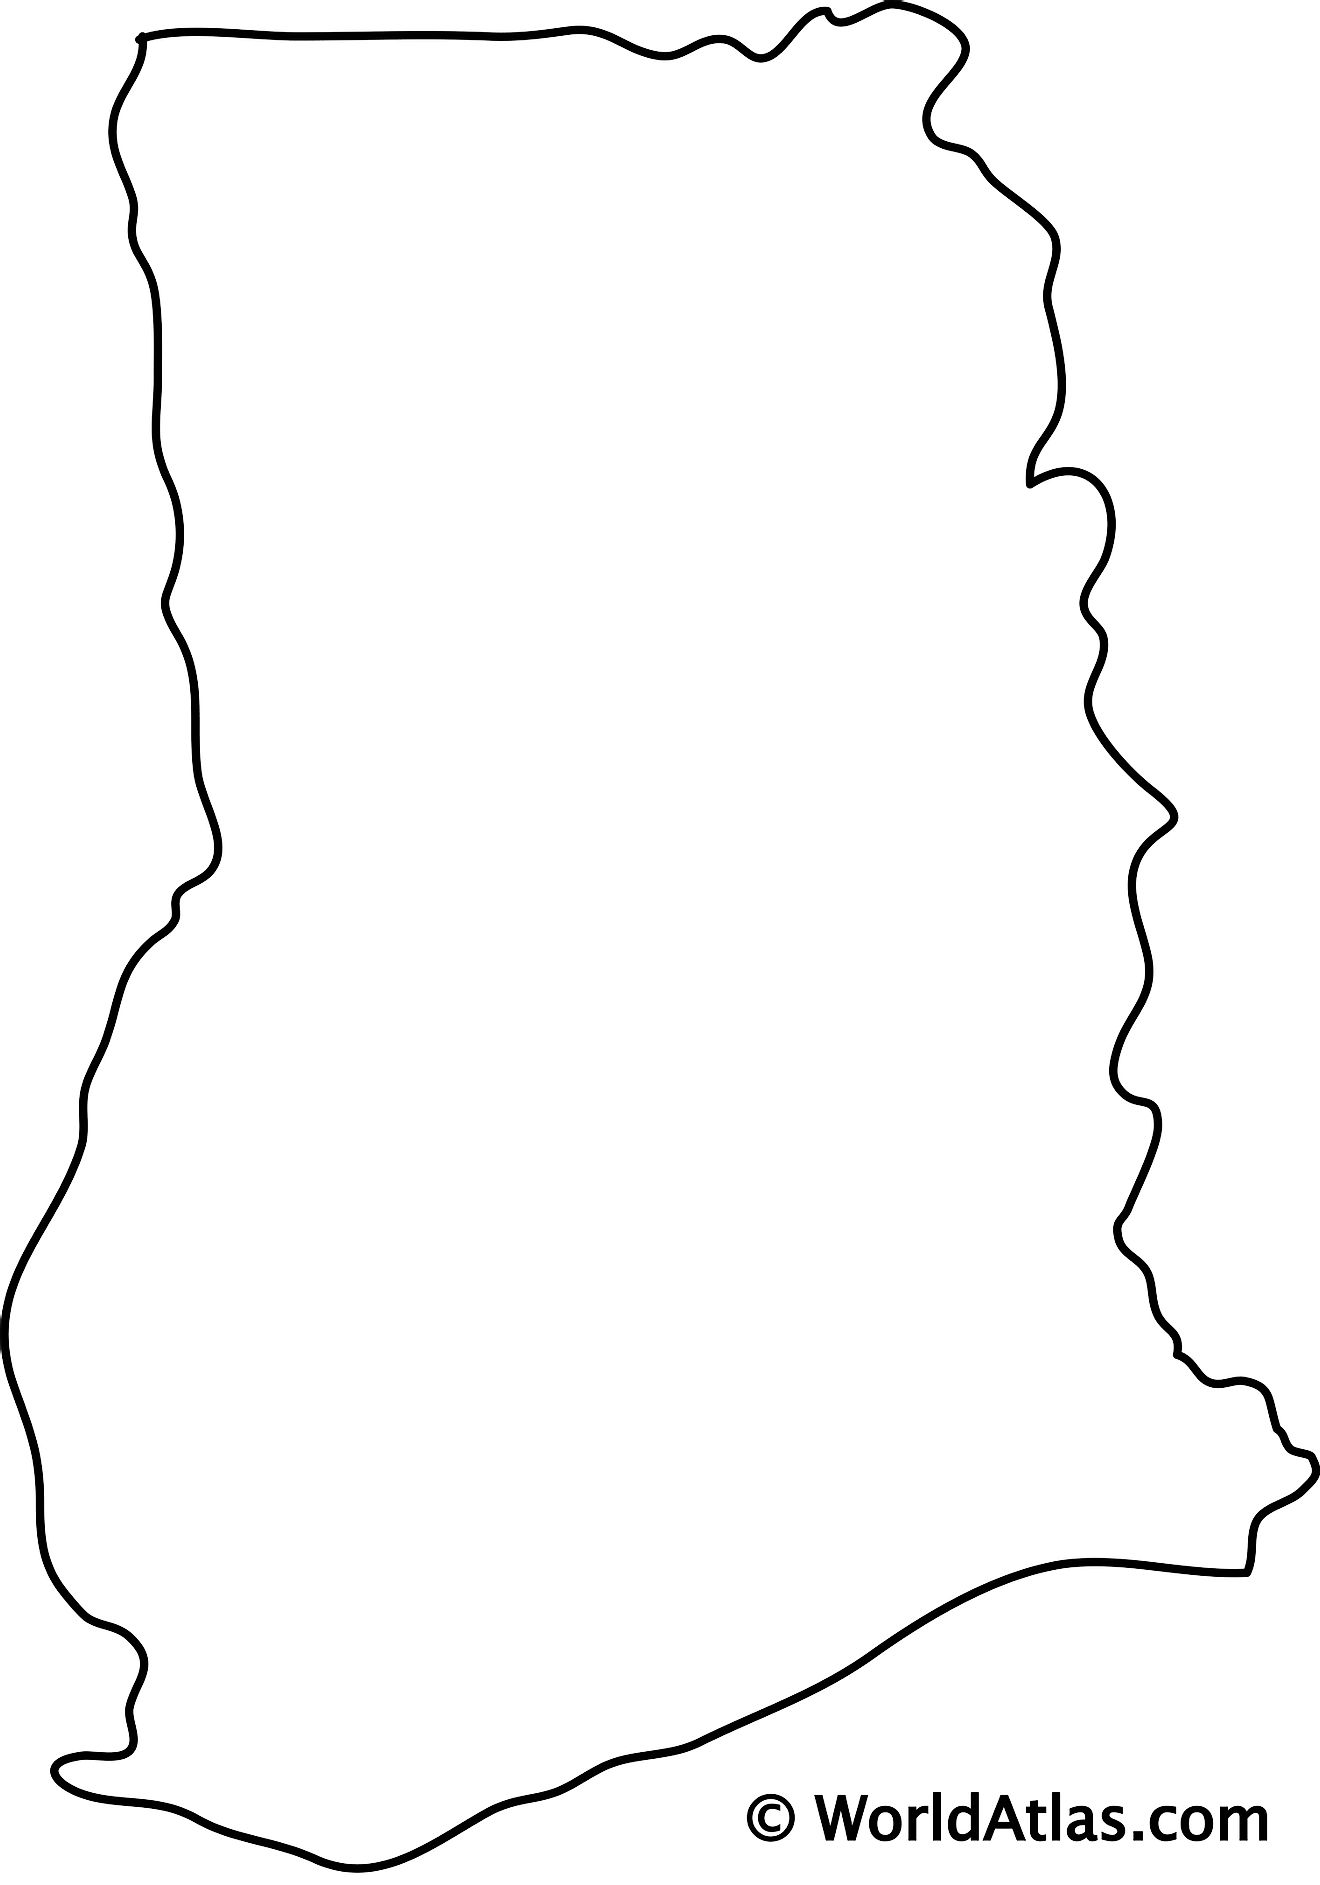 Blank Outline Map of Ghana